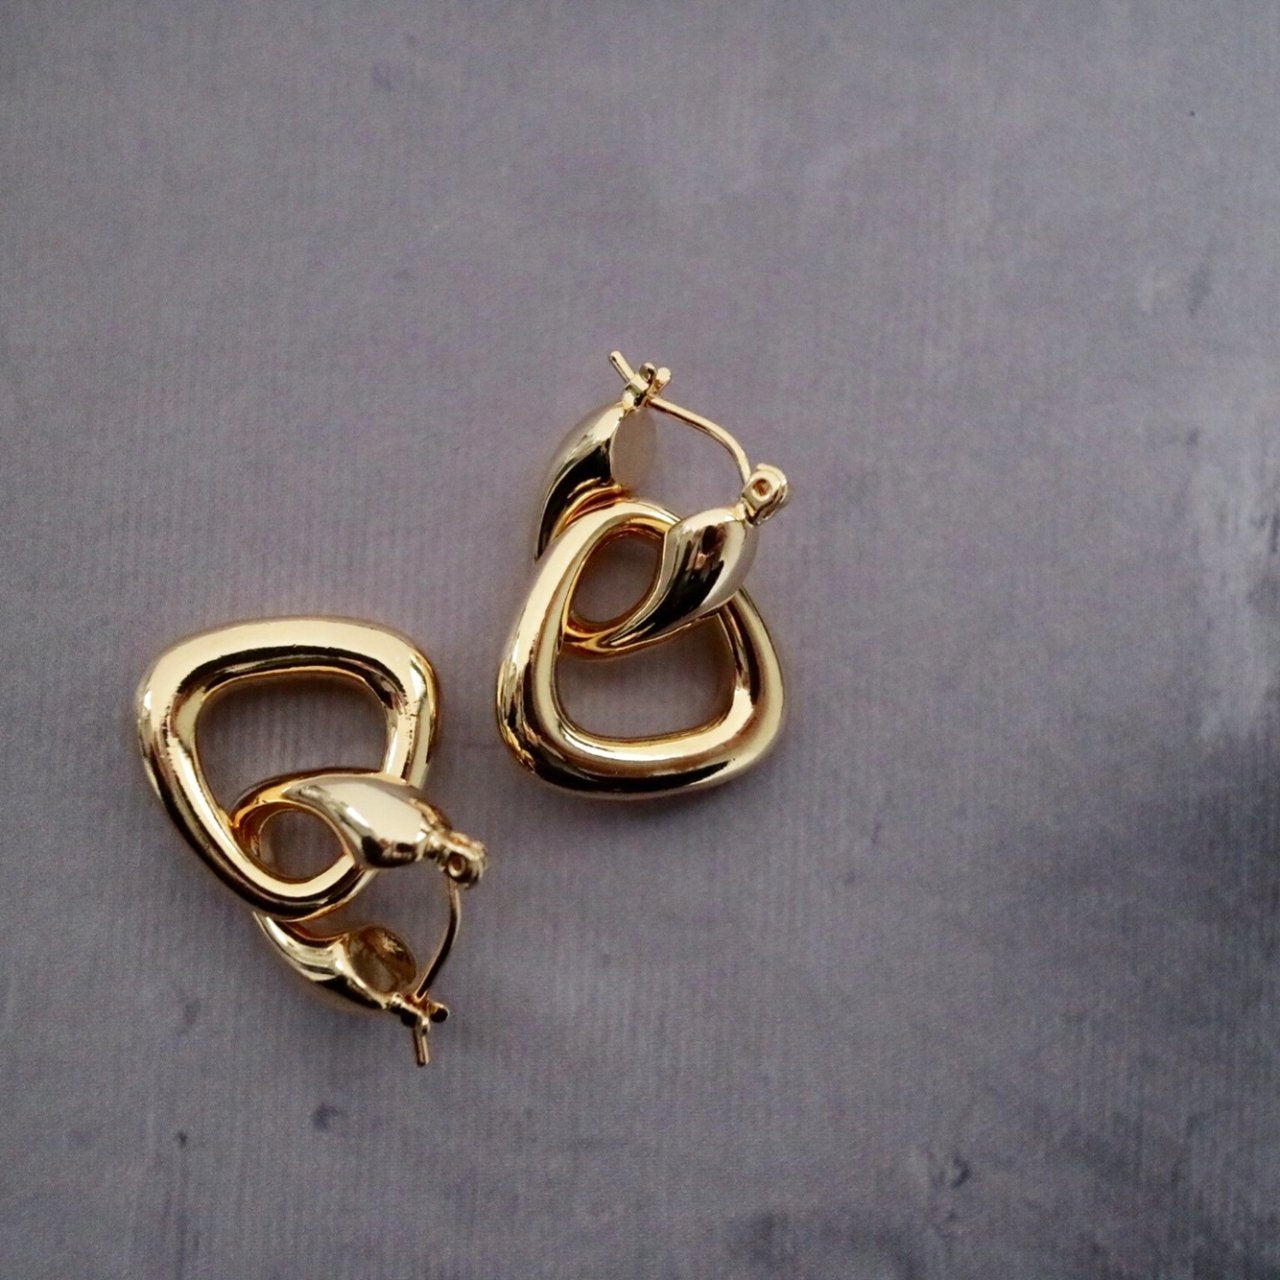 Maine Earrings in Gold